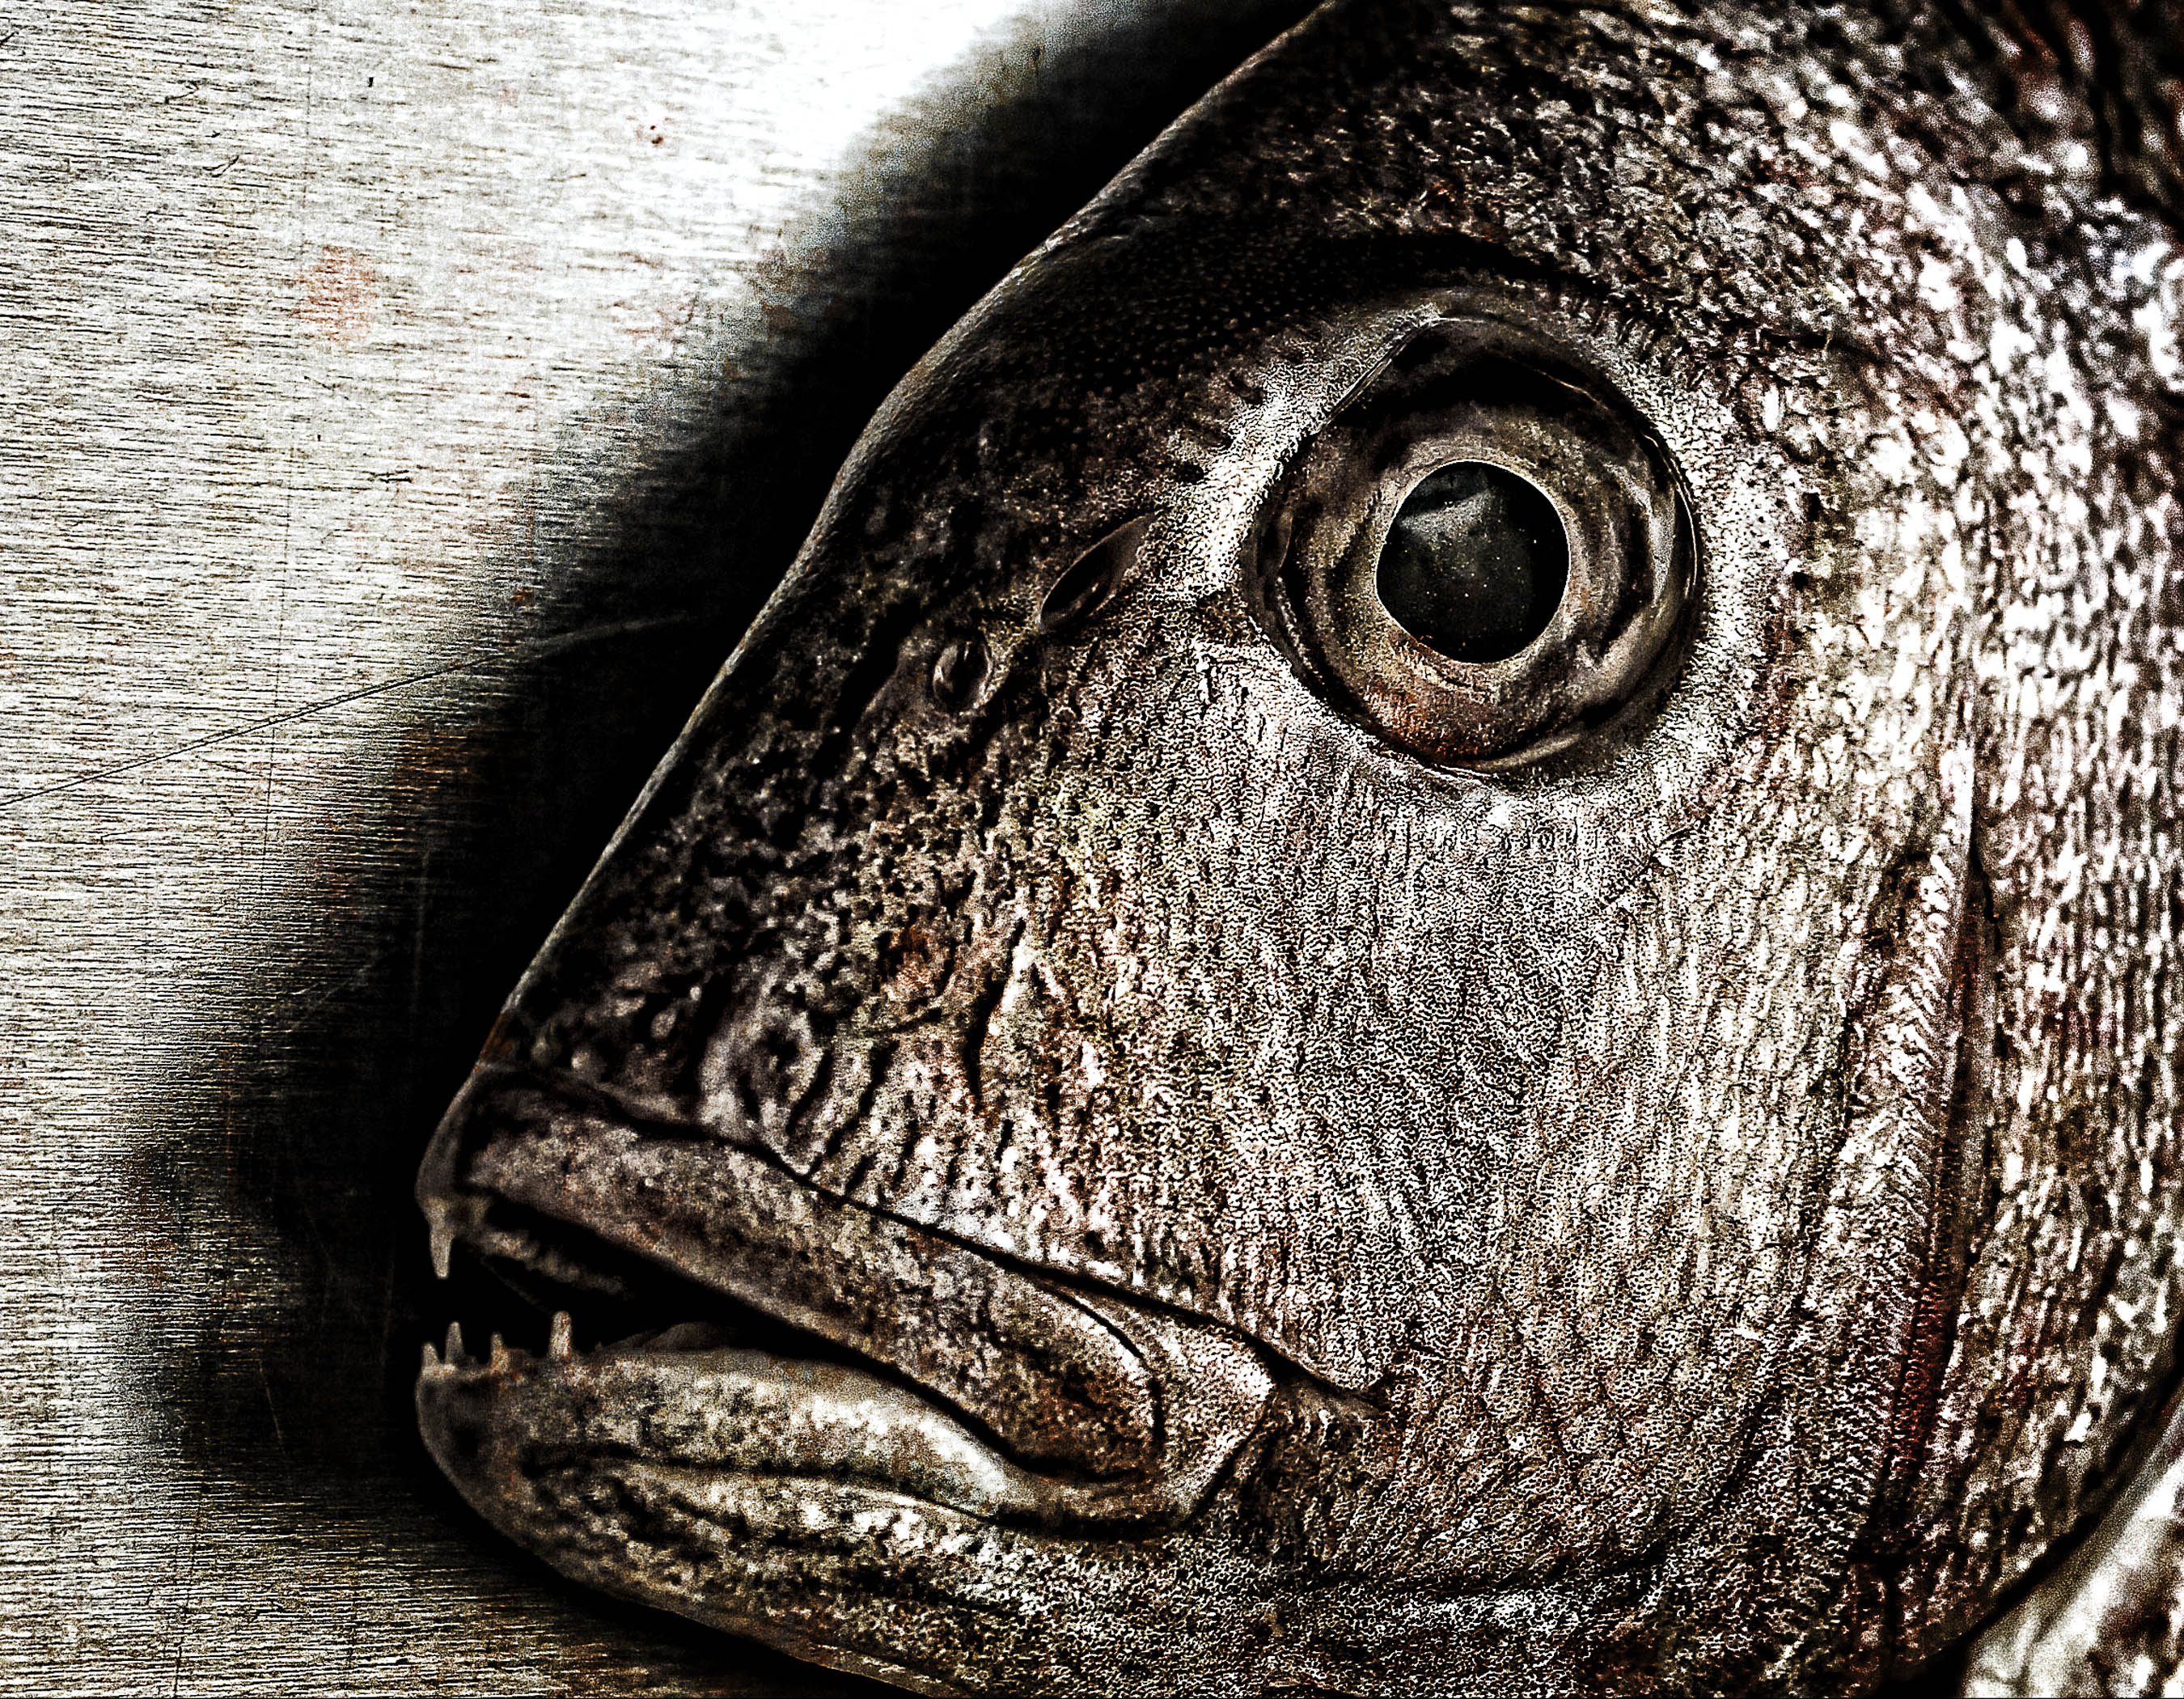 Fish face - closeup of a snapper photo